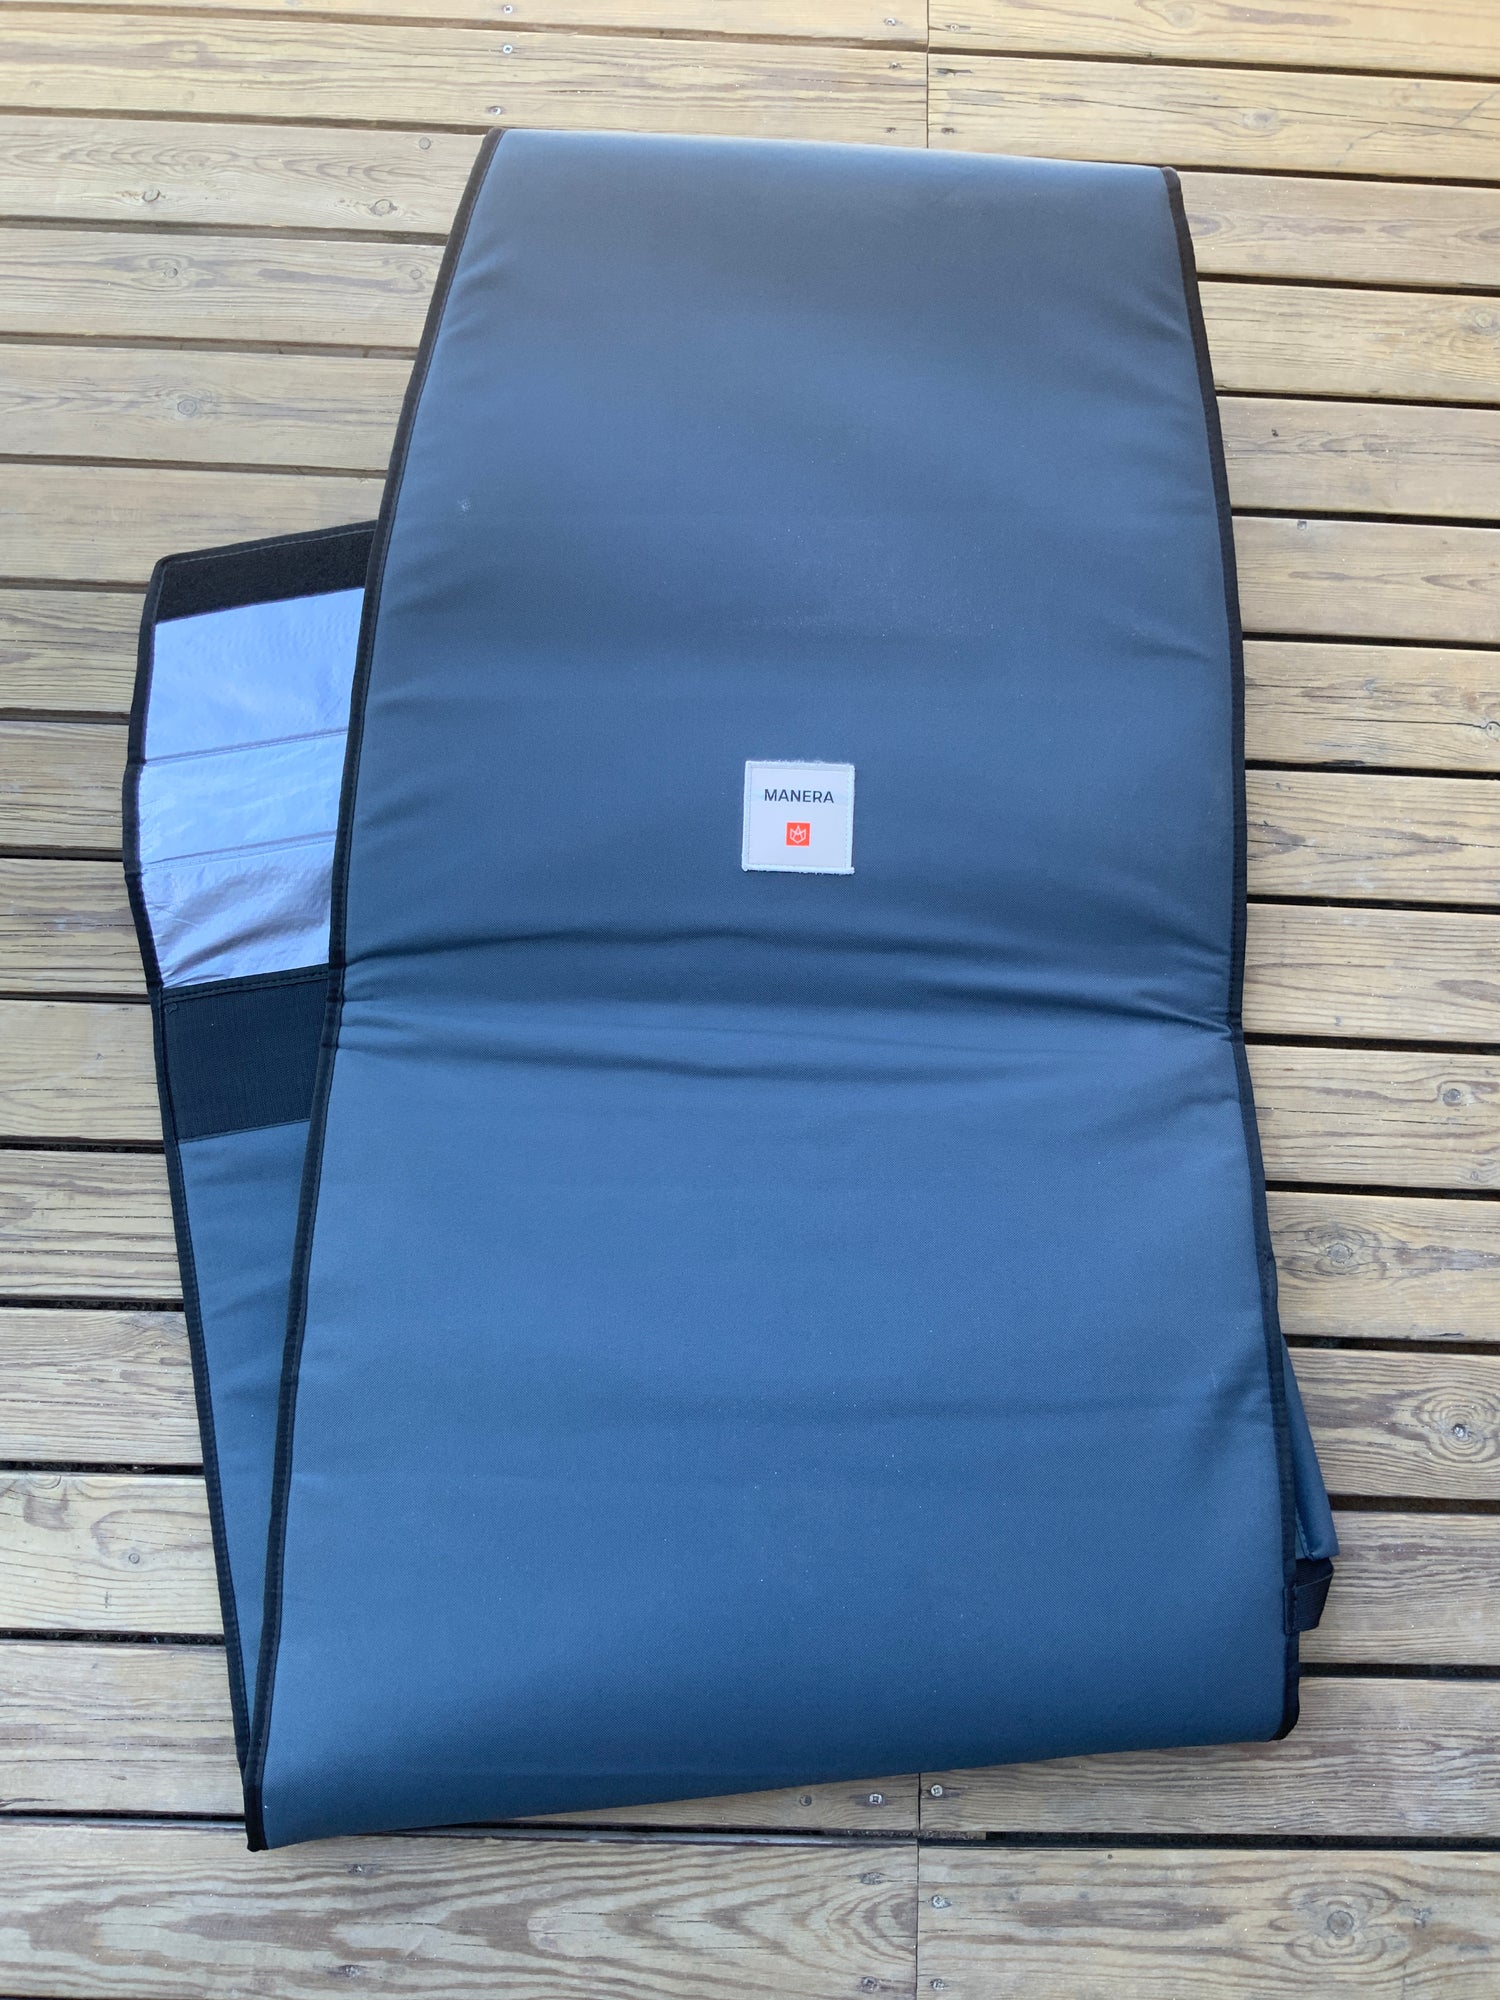 MANERA SURF FOIL Board bag 4&